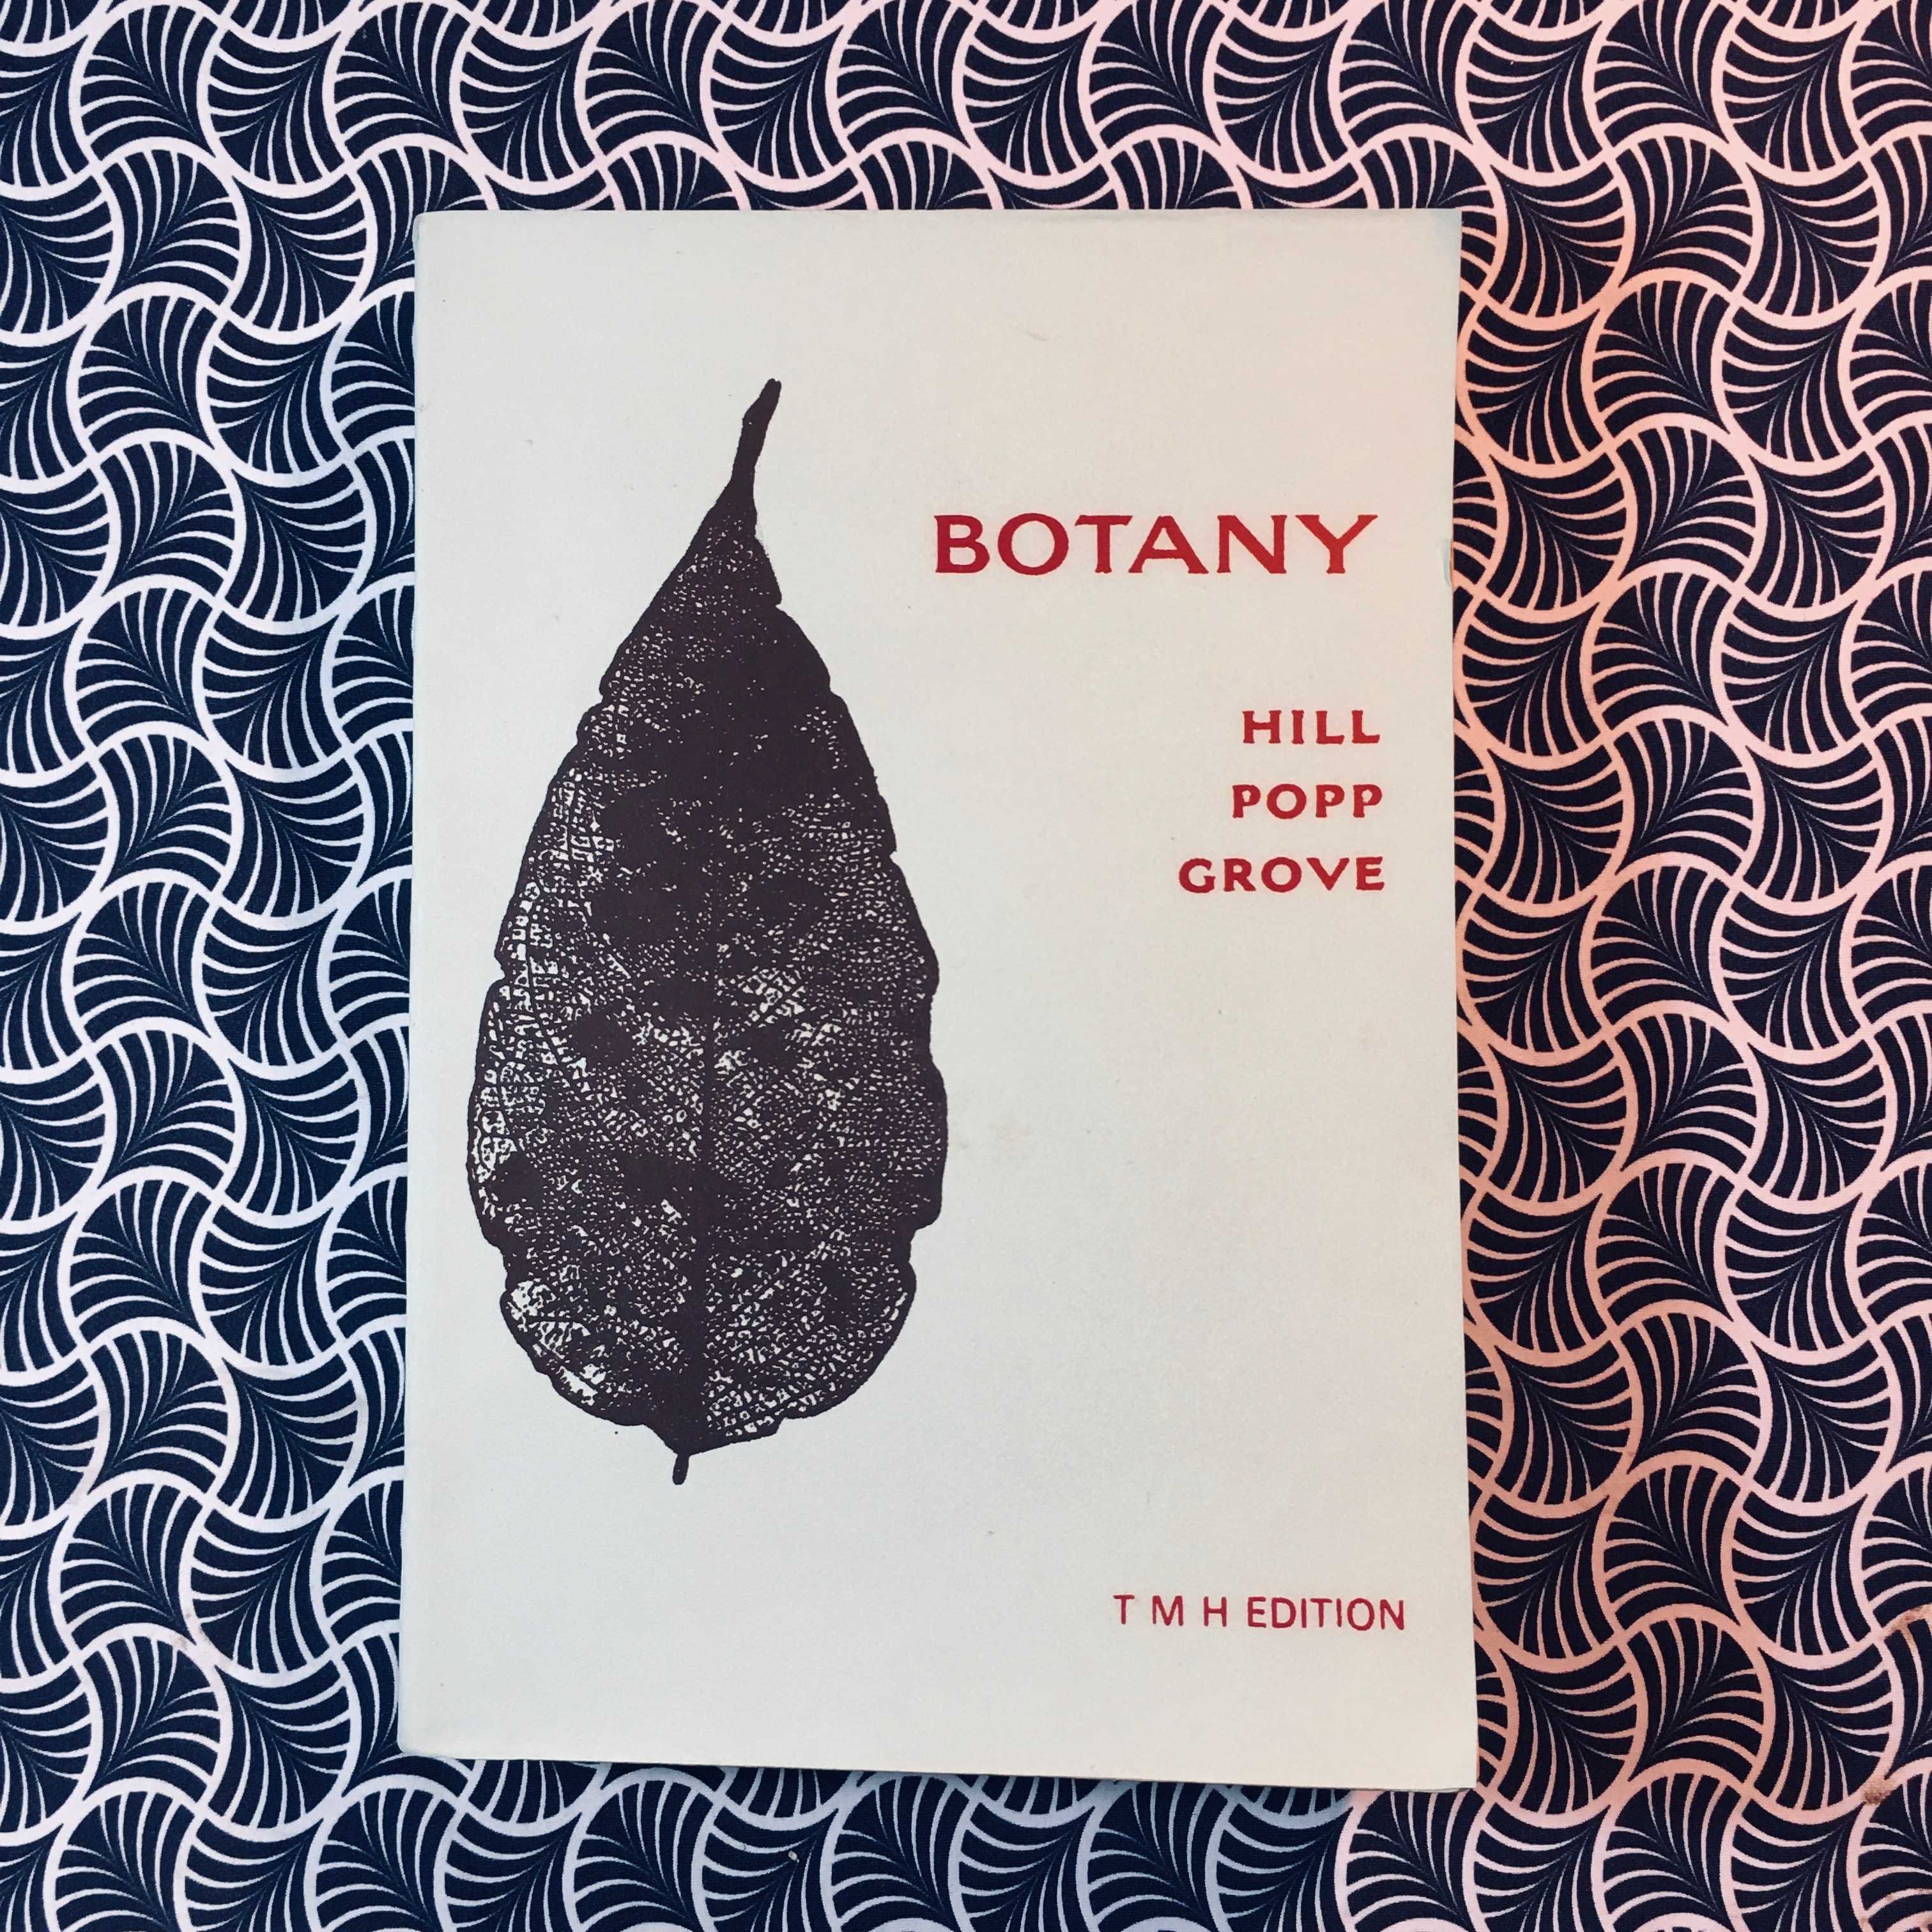 Botany - Popp, Grove Hill